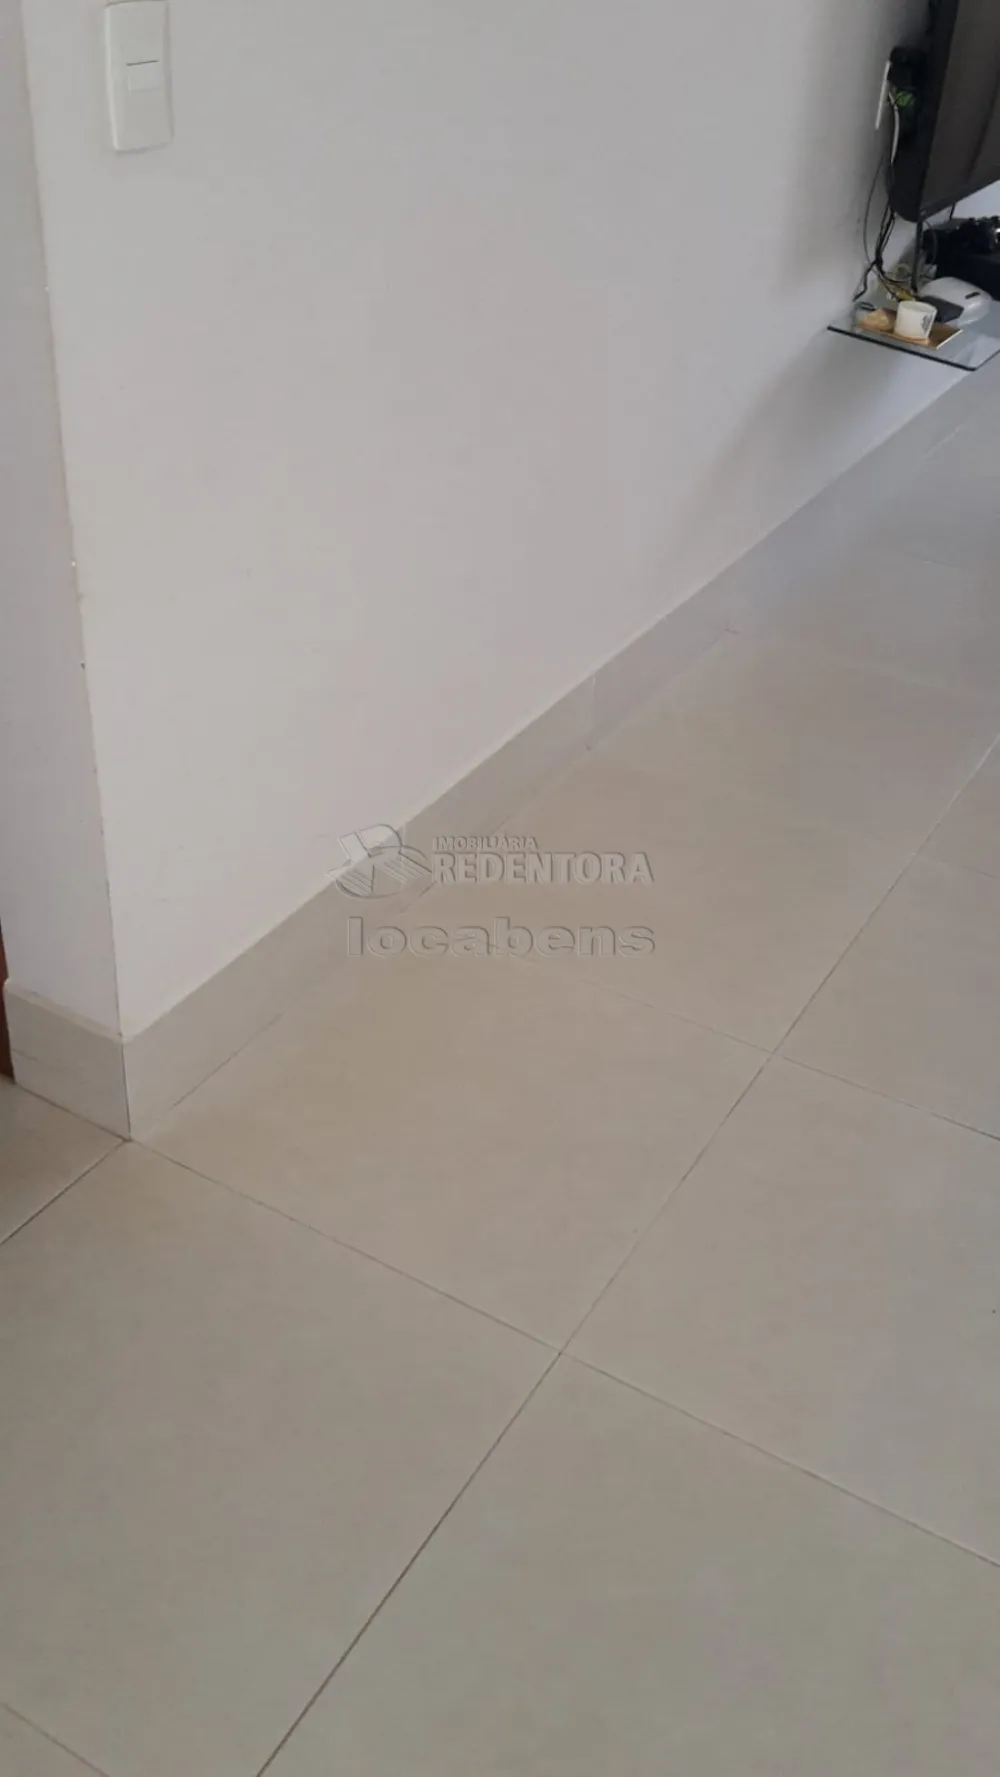 Comprar Casa / Padrão em São José do Rio Preto R$ 210.000,00 - Foto 2